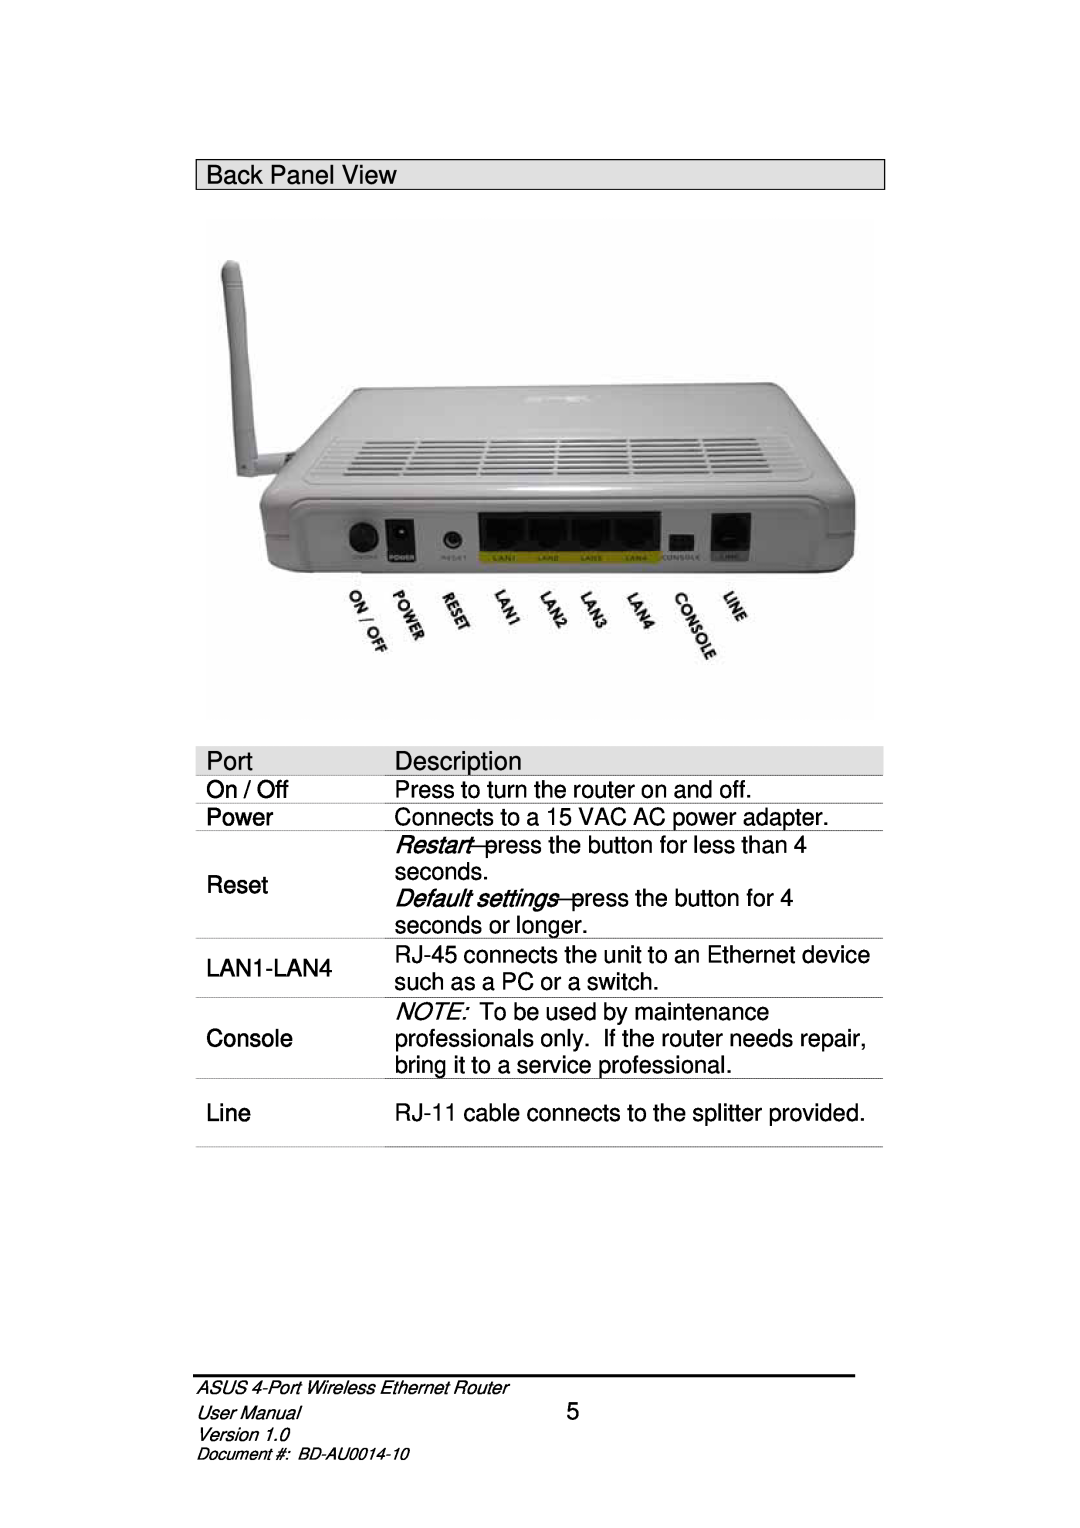 Asus BD-AU0014-10 user manual Back Panel View, Port, Description, On / Off Power Reset LAN1-LAN4 Console Line 